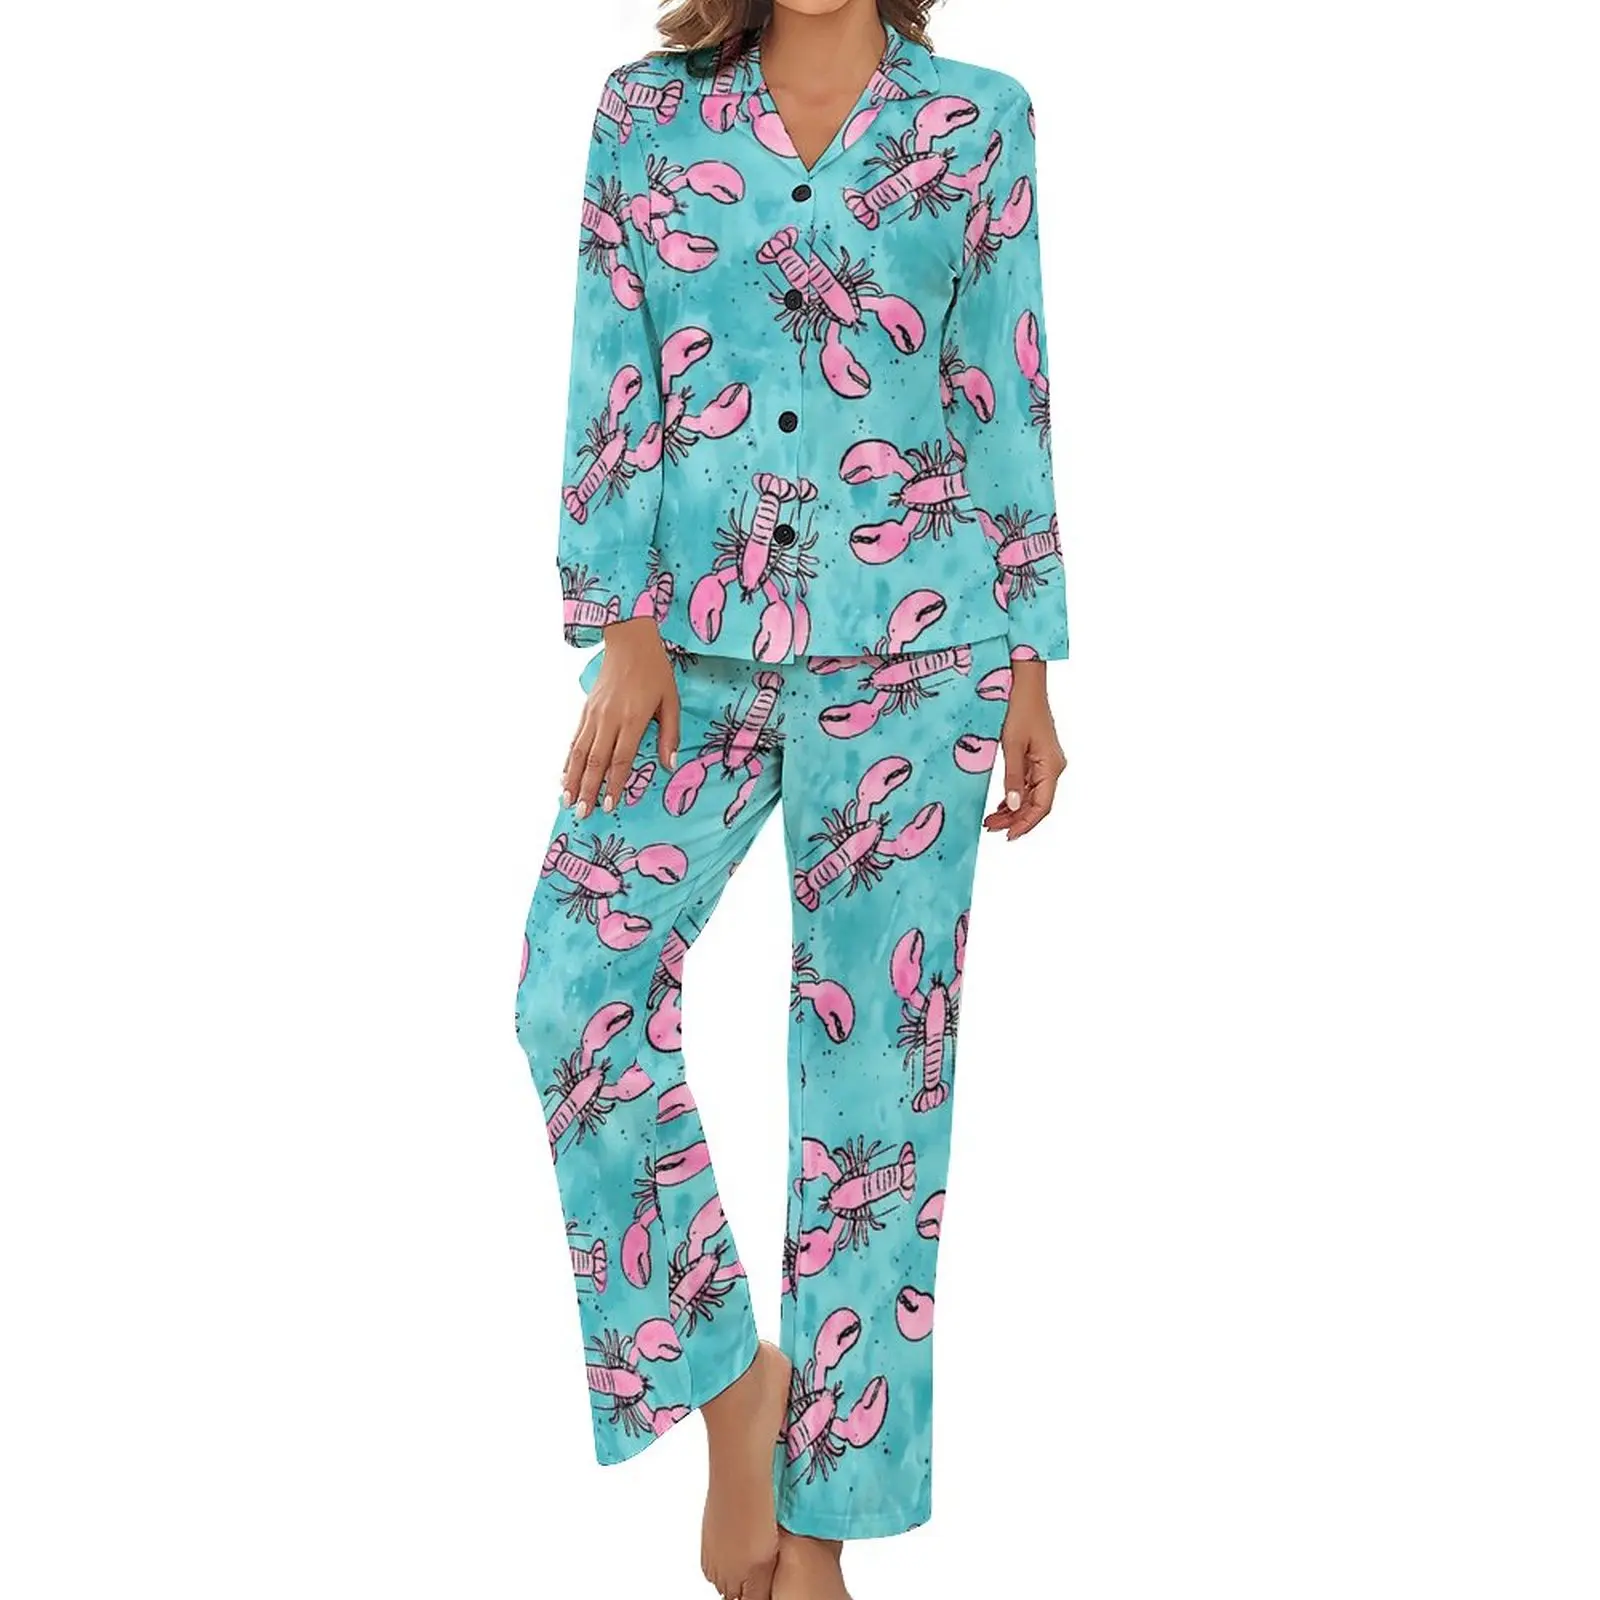 

Женская пижама с принтом Lobsters, розовая и синяя модная ночная одежда, весенние повседневные пижамные комплекты из 2 предметов с V-образным вырезом и графическим принтом